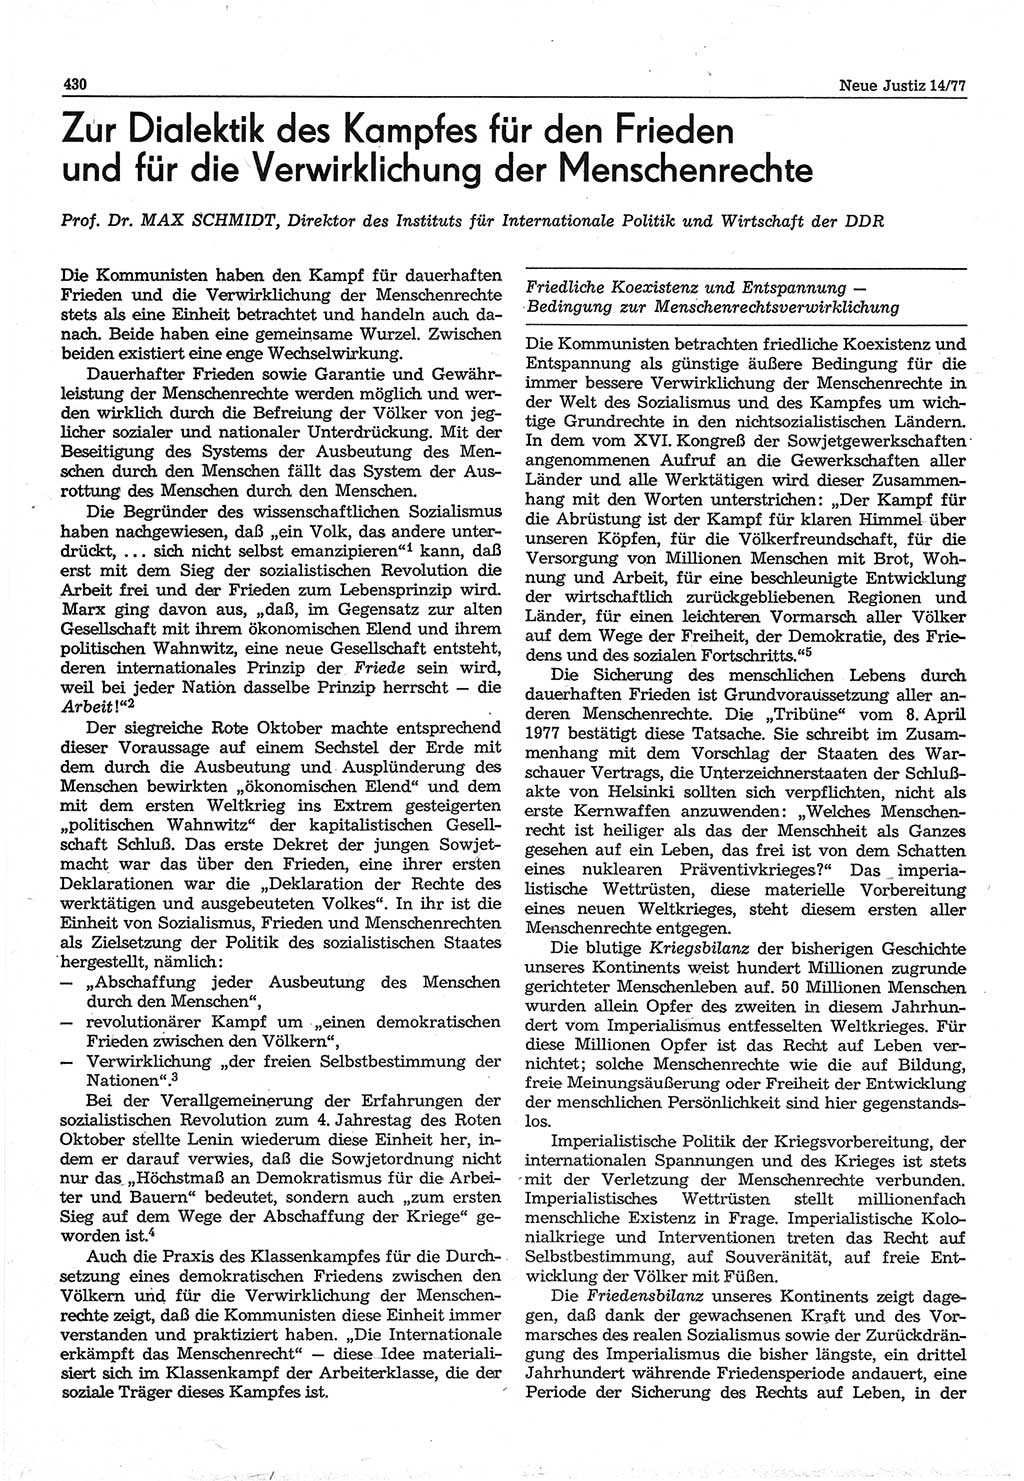 Neue Justiz (NJ), Zeitschrift für Recht und Rechtswissenschaft-Zeitschrift, sozialistisches Recht und Gesetzlichkeit, 31. Jahrgang 1977, Seite 430 (NJ DDR 1977, S. 430)